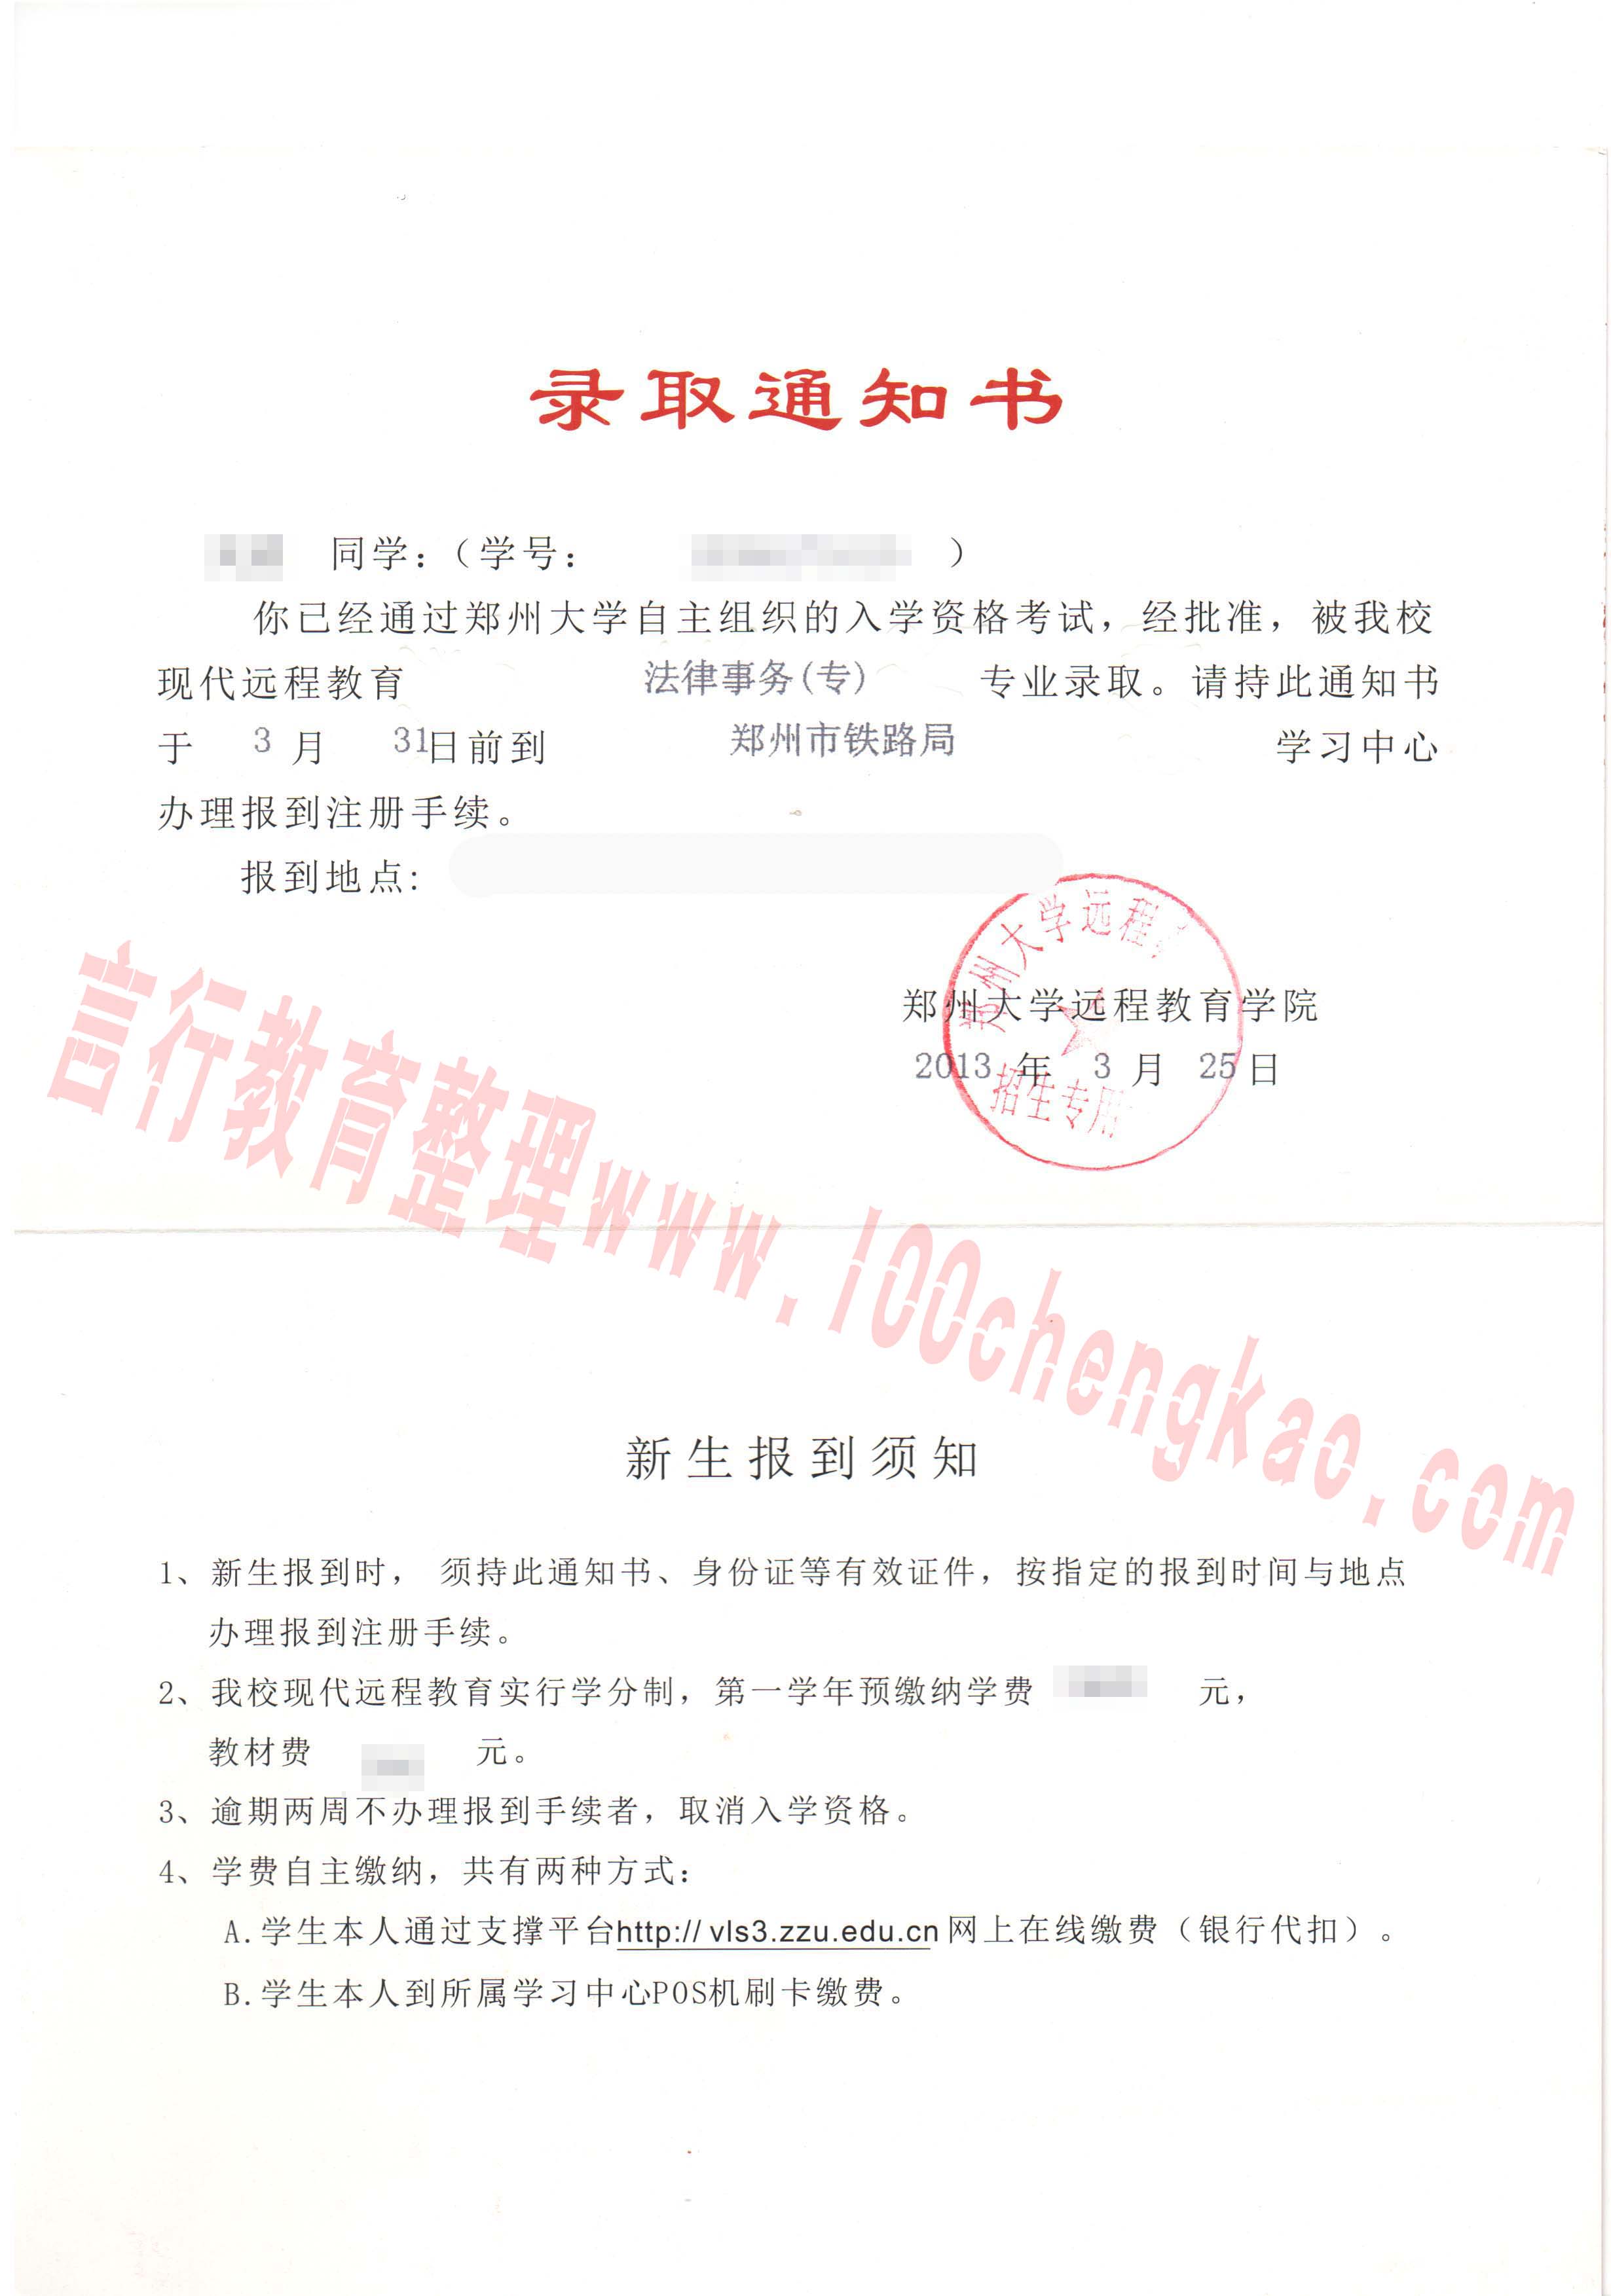 郑州大学远程教育录取通知书样本-2内页.jpg